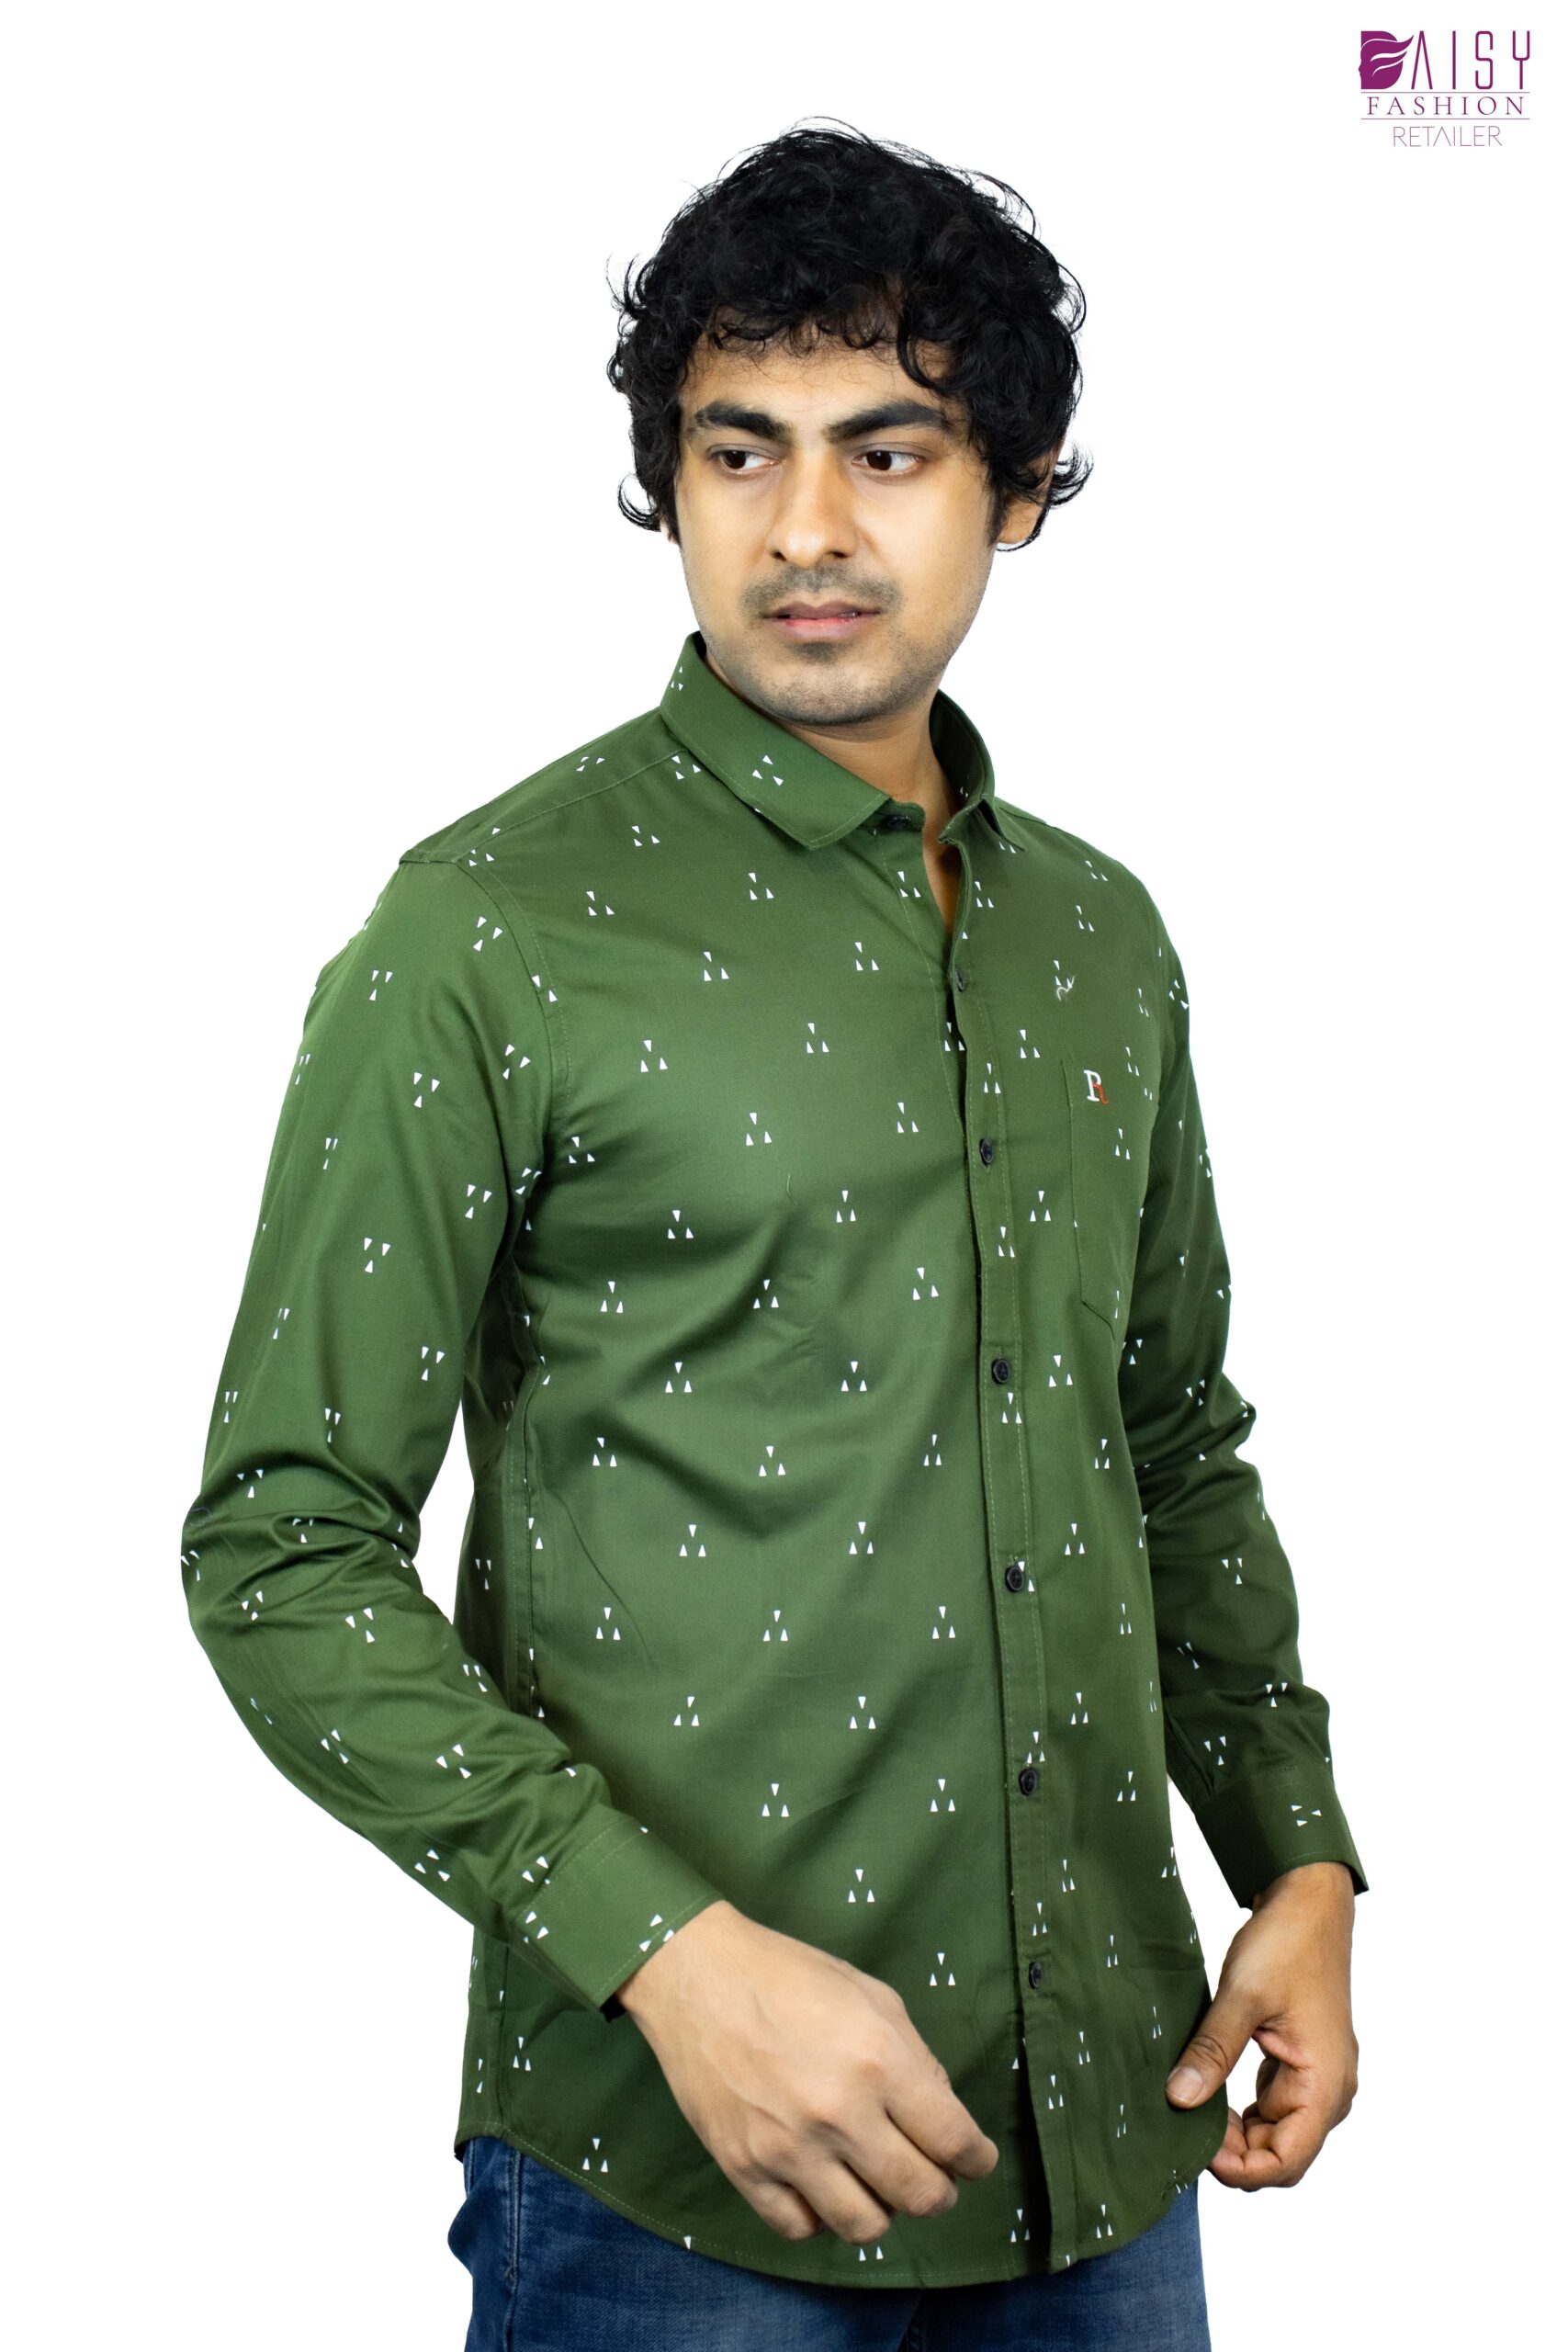 Printed Green Shirt